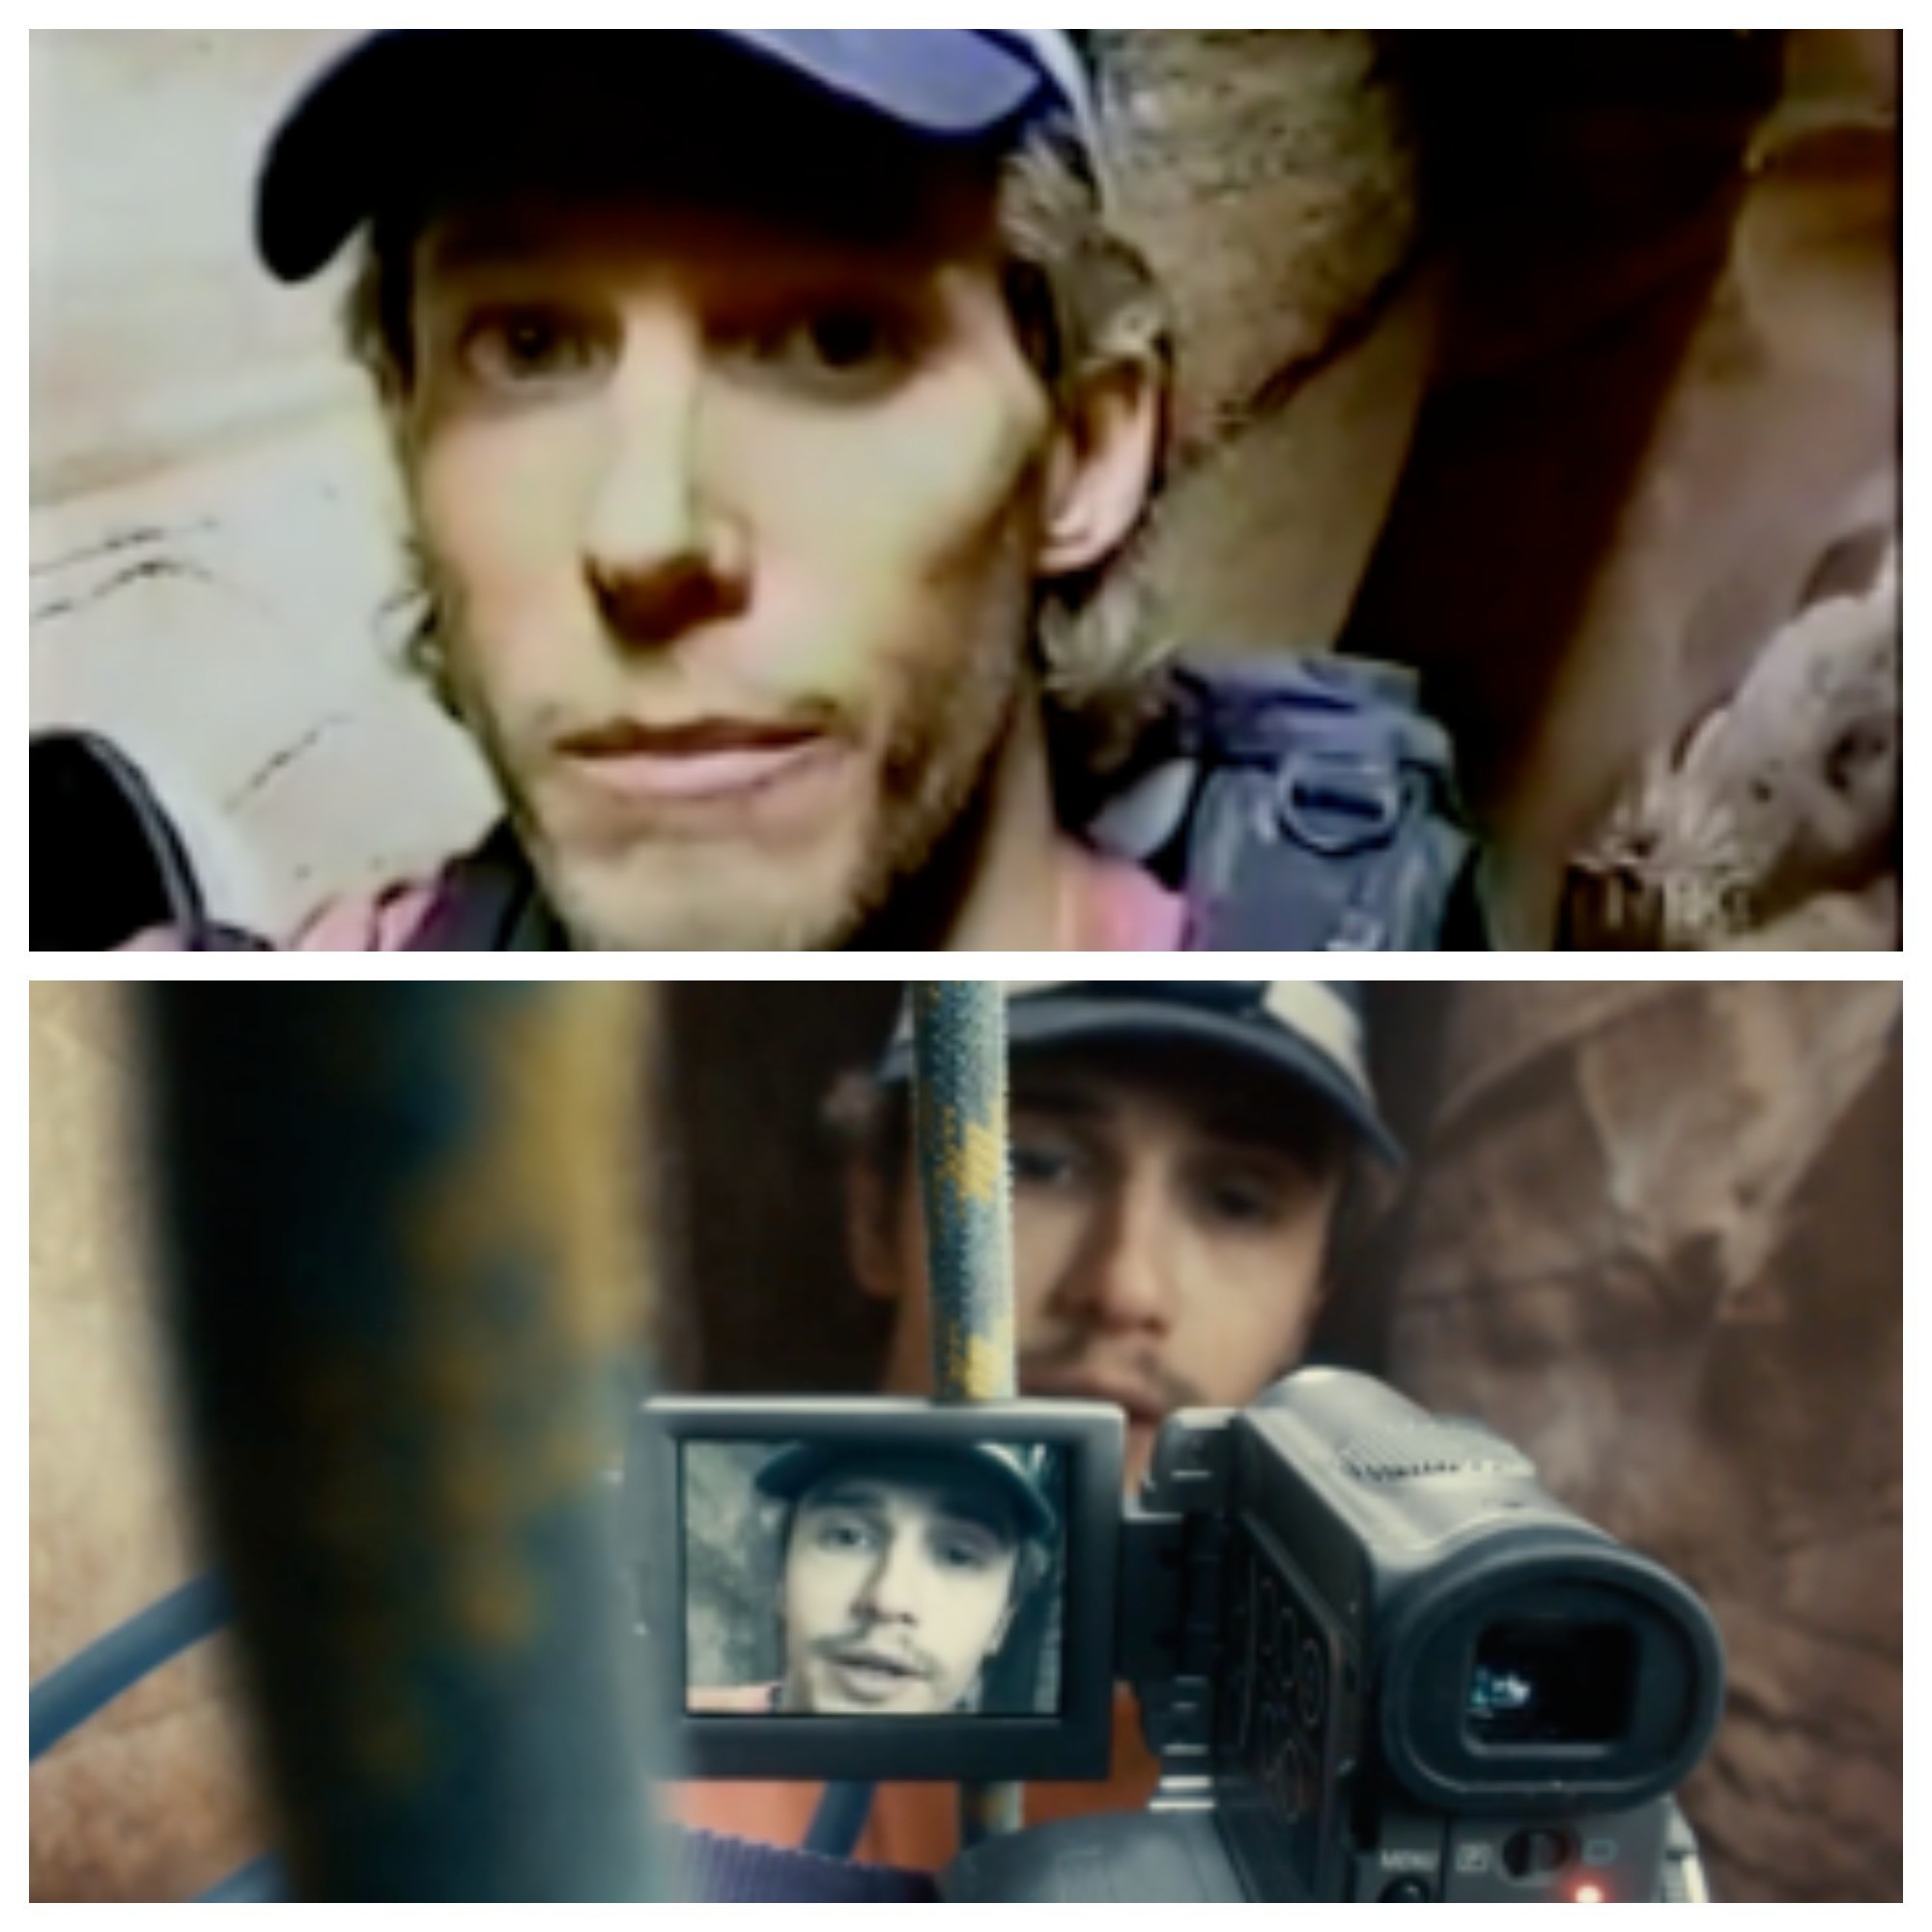 Альпинист Арон Ралстон (фотография выше), кадр из фильма "127 часов" (ниже).